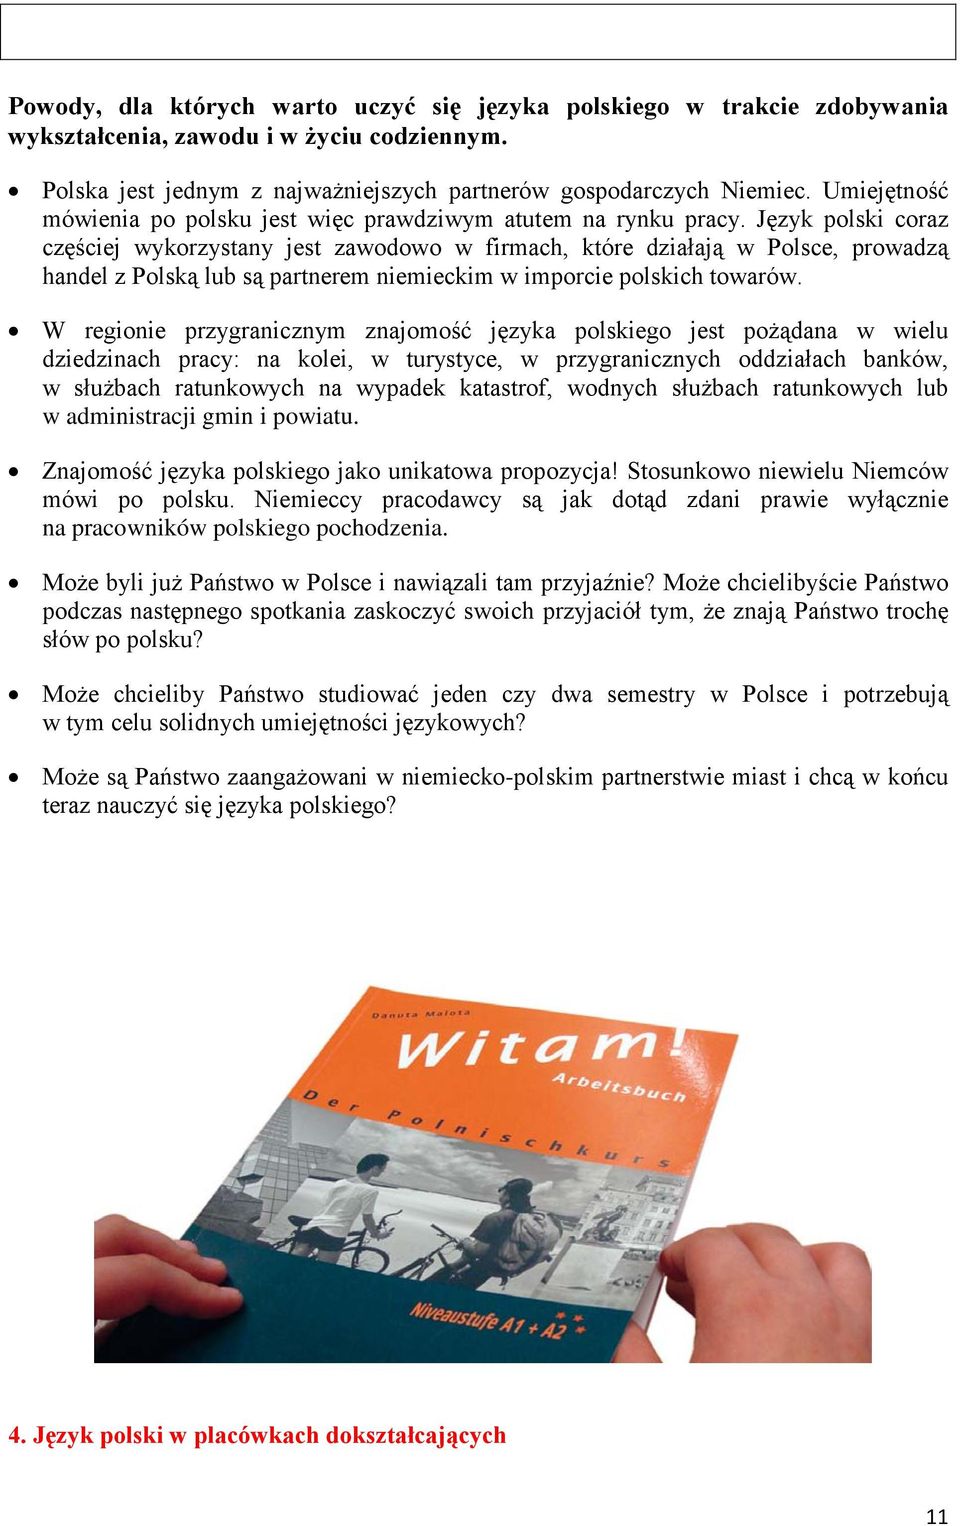 Język polski coraz częściej wykorzystany jest zawodowo w firmach, które działają w Polsce, prowadzą handel z Polską lub są partnerem niemieckim w imporcie polskich towarów.